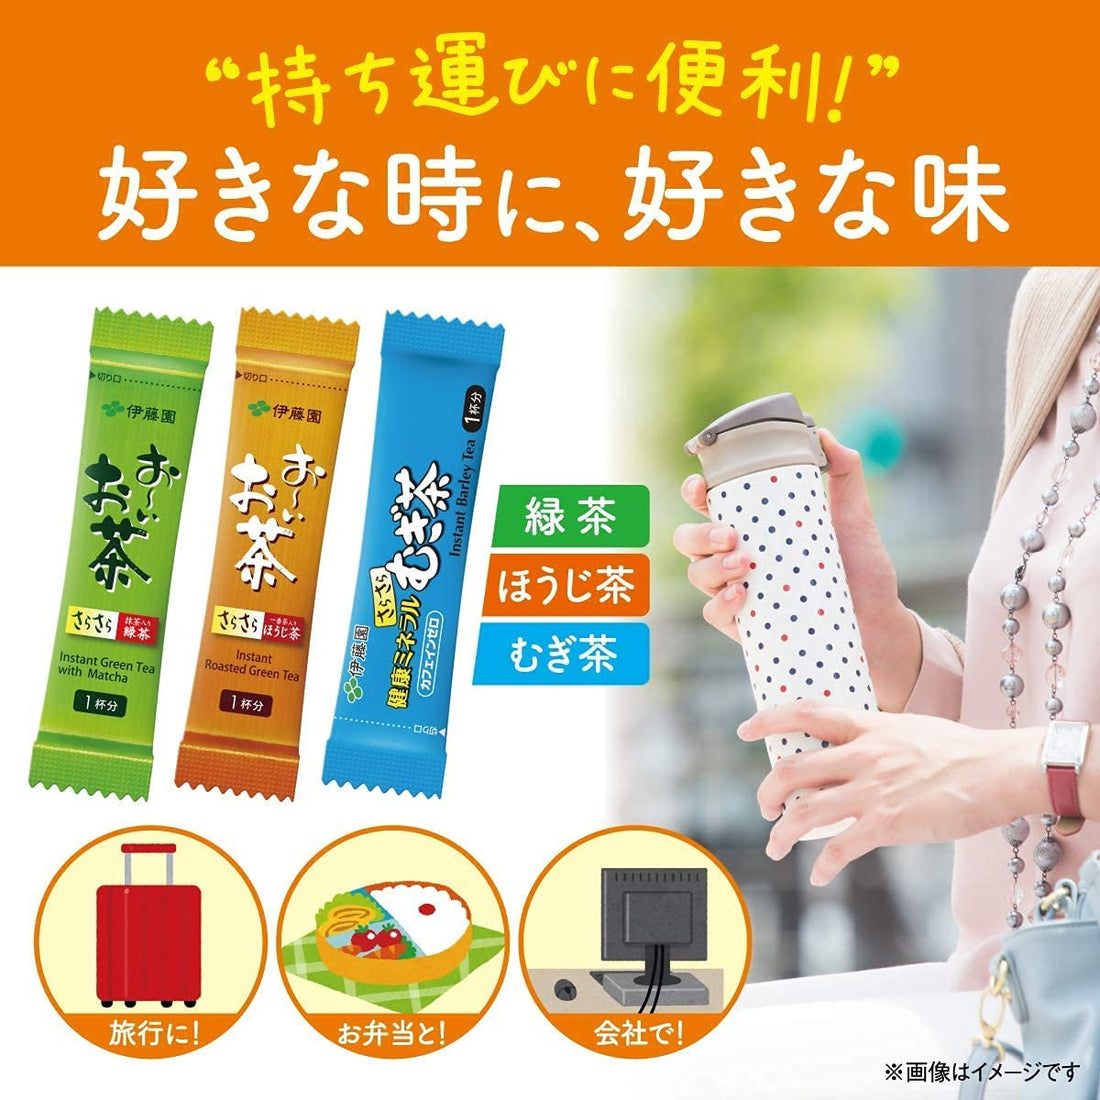 Ito En Smooth Healthy Mineral Mugi Barley Tea 0.8g x 100 (Stick Type) - NihonMura